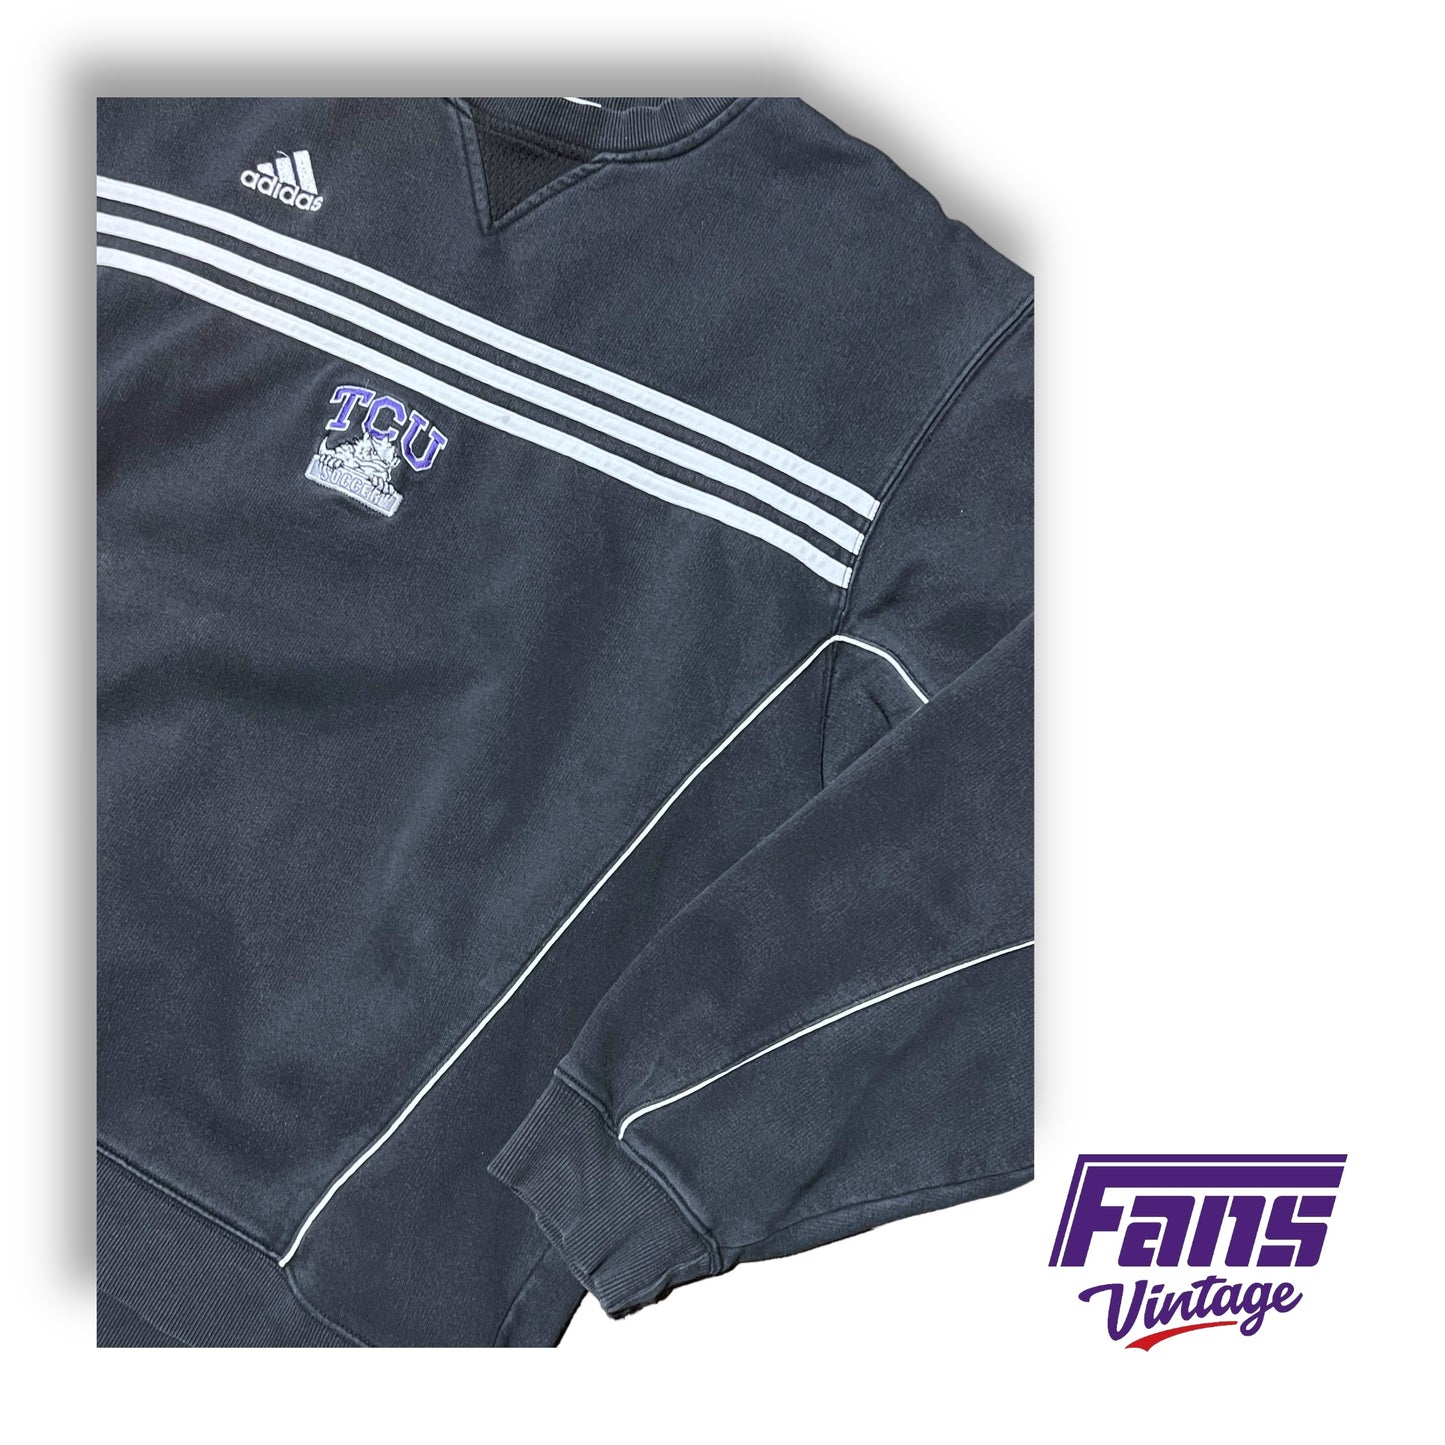 RAD Vintage TCU Soccer Team Issue Adidas Crewneck Sweater